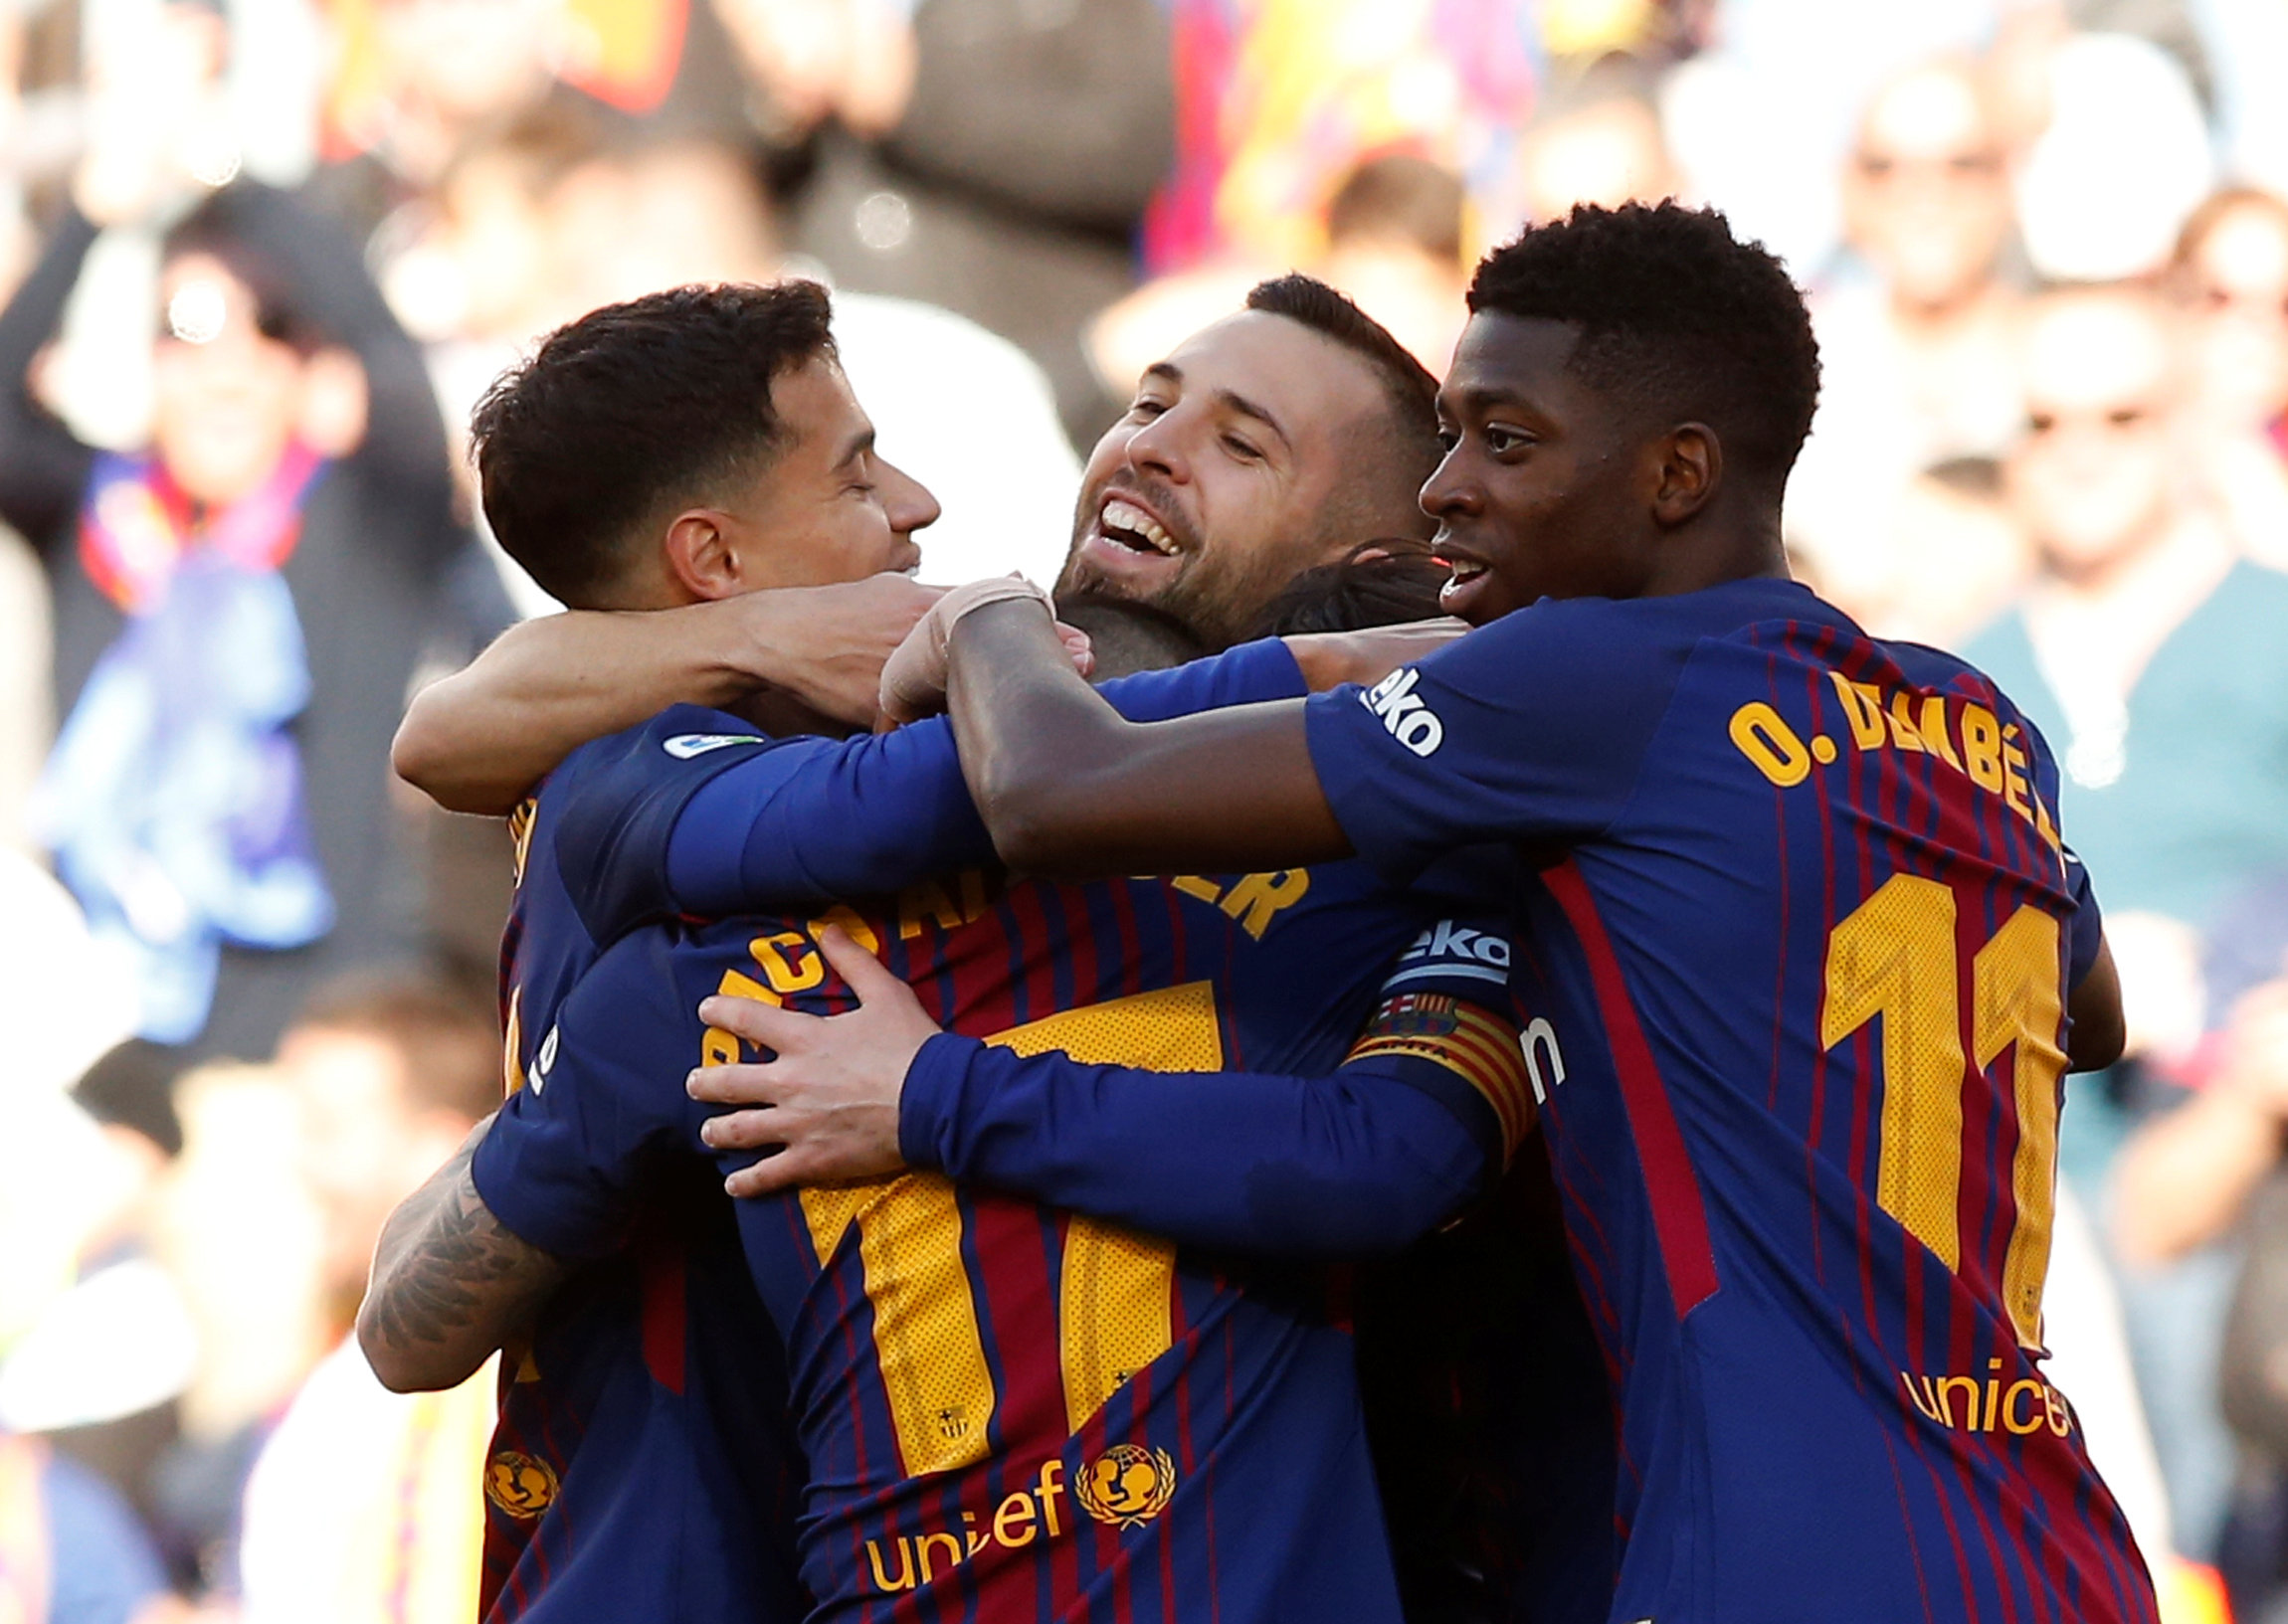 Niềm vui của các cầu thủ Barcelona sau khi Alcacer mở tỉ số. Ảnh: REUTERS